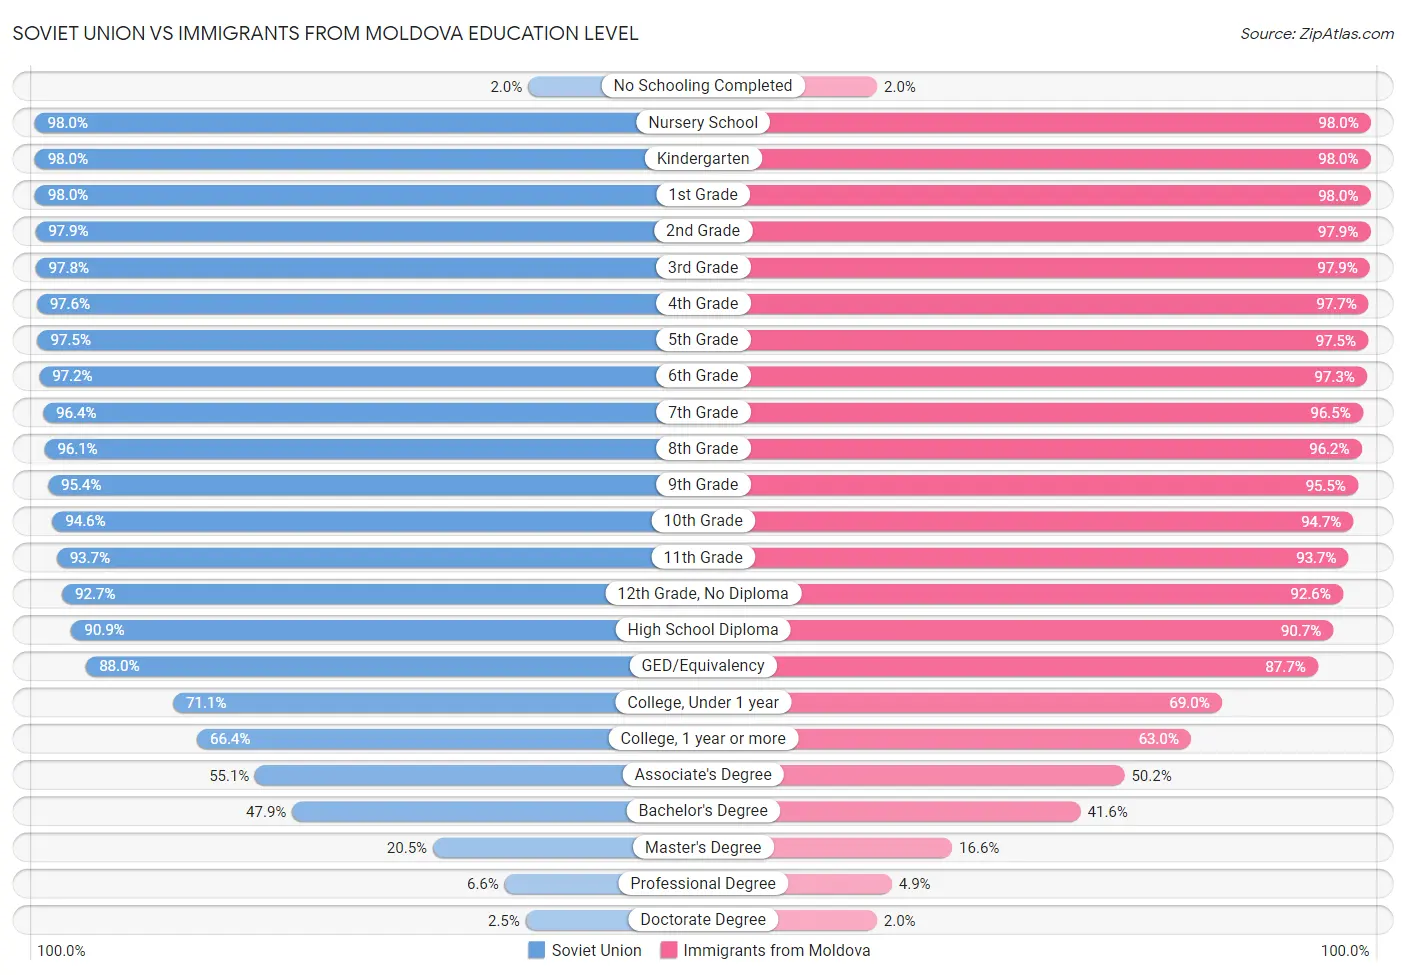 Soviet Union vs Immigrants from Moldova Education Level